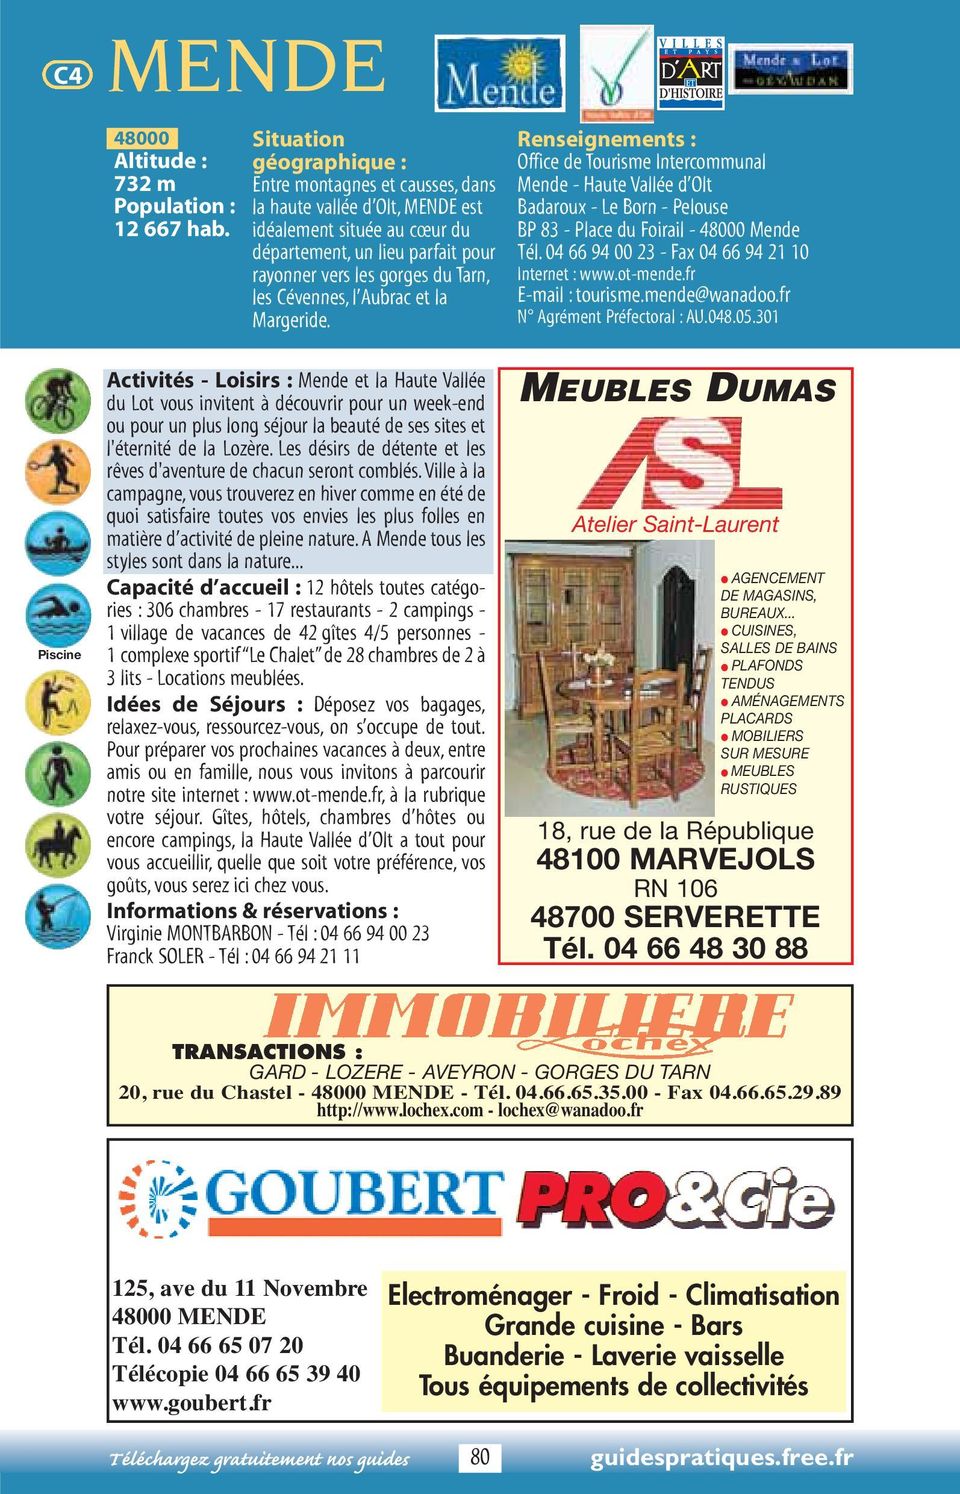 Cévennes, l Aubrac et la Margeride. Office de Tourisme Intercommunal Mende - Haute Vallée d Olt Badaroux - Le Born - Pelouse BP 83 - Place du Foirail - 48000 Mende Tél.